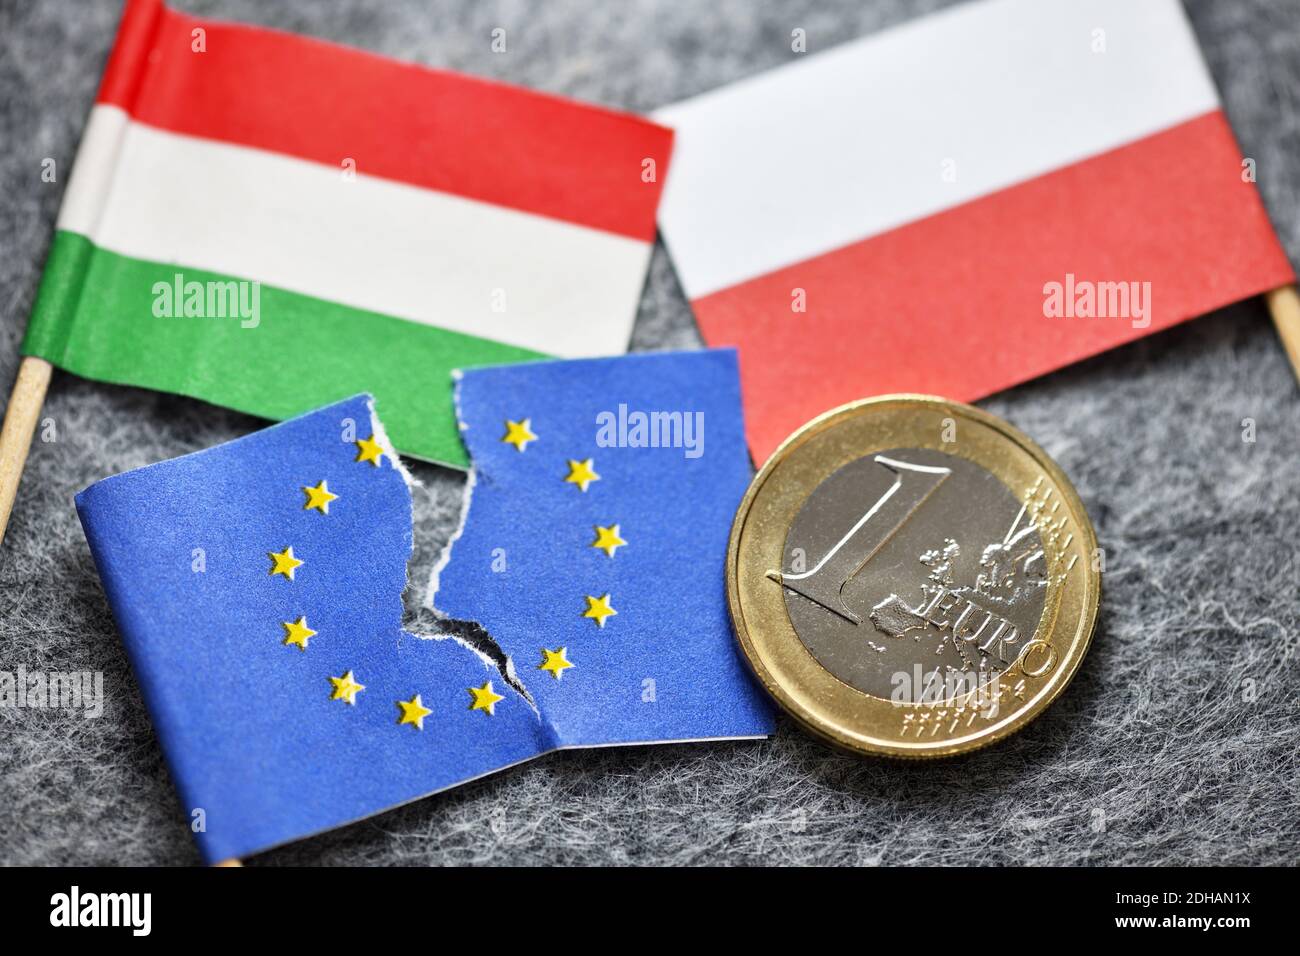 Angerissene EU-Fahne und Fahnen von Ungarn und Polen mit Euromünze, EU-Haushaltsstreit Stock Photo